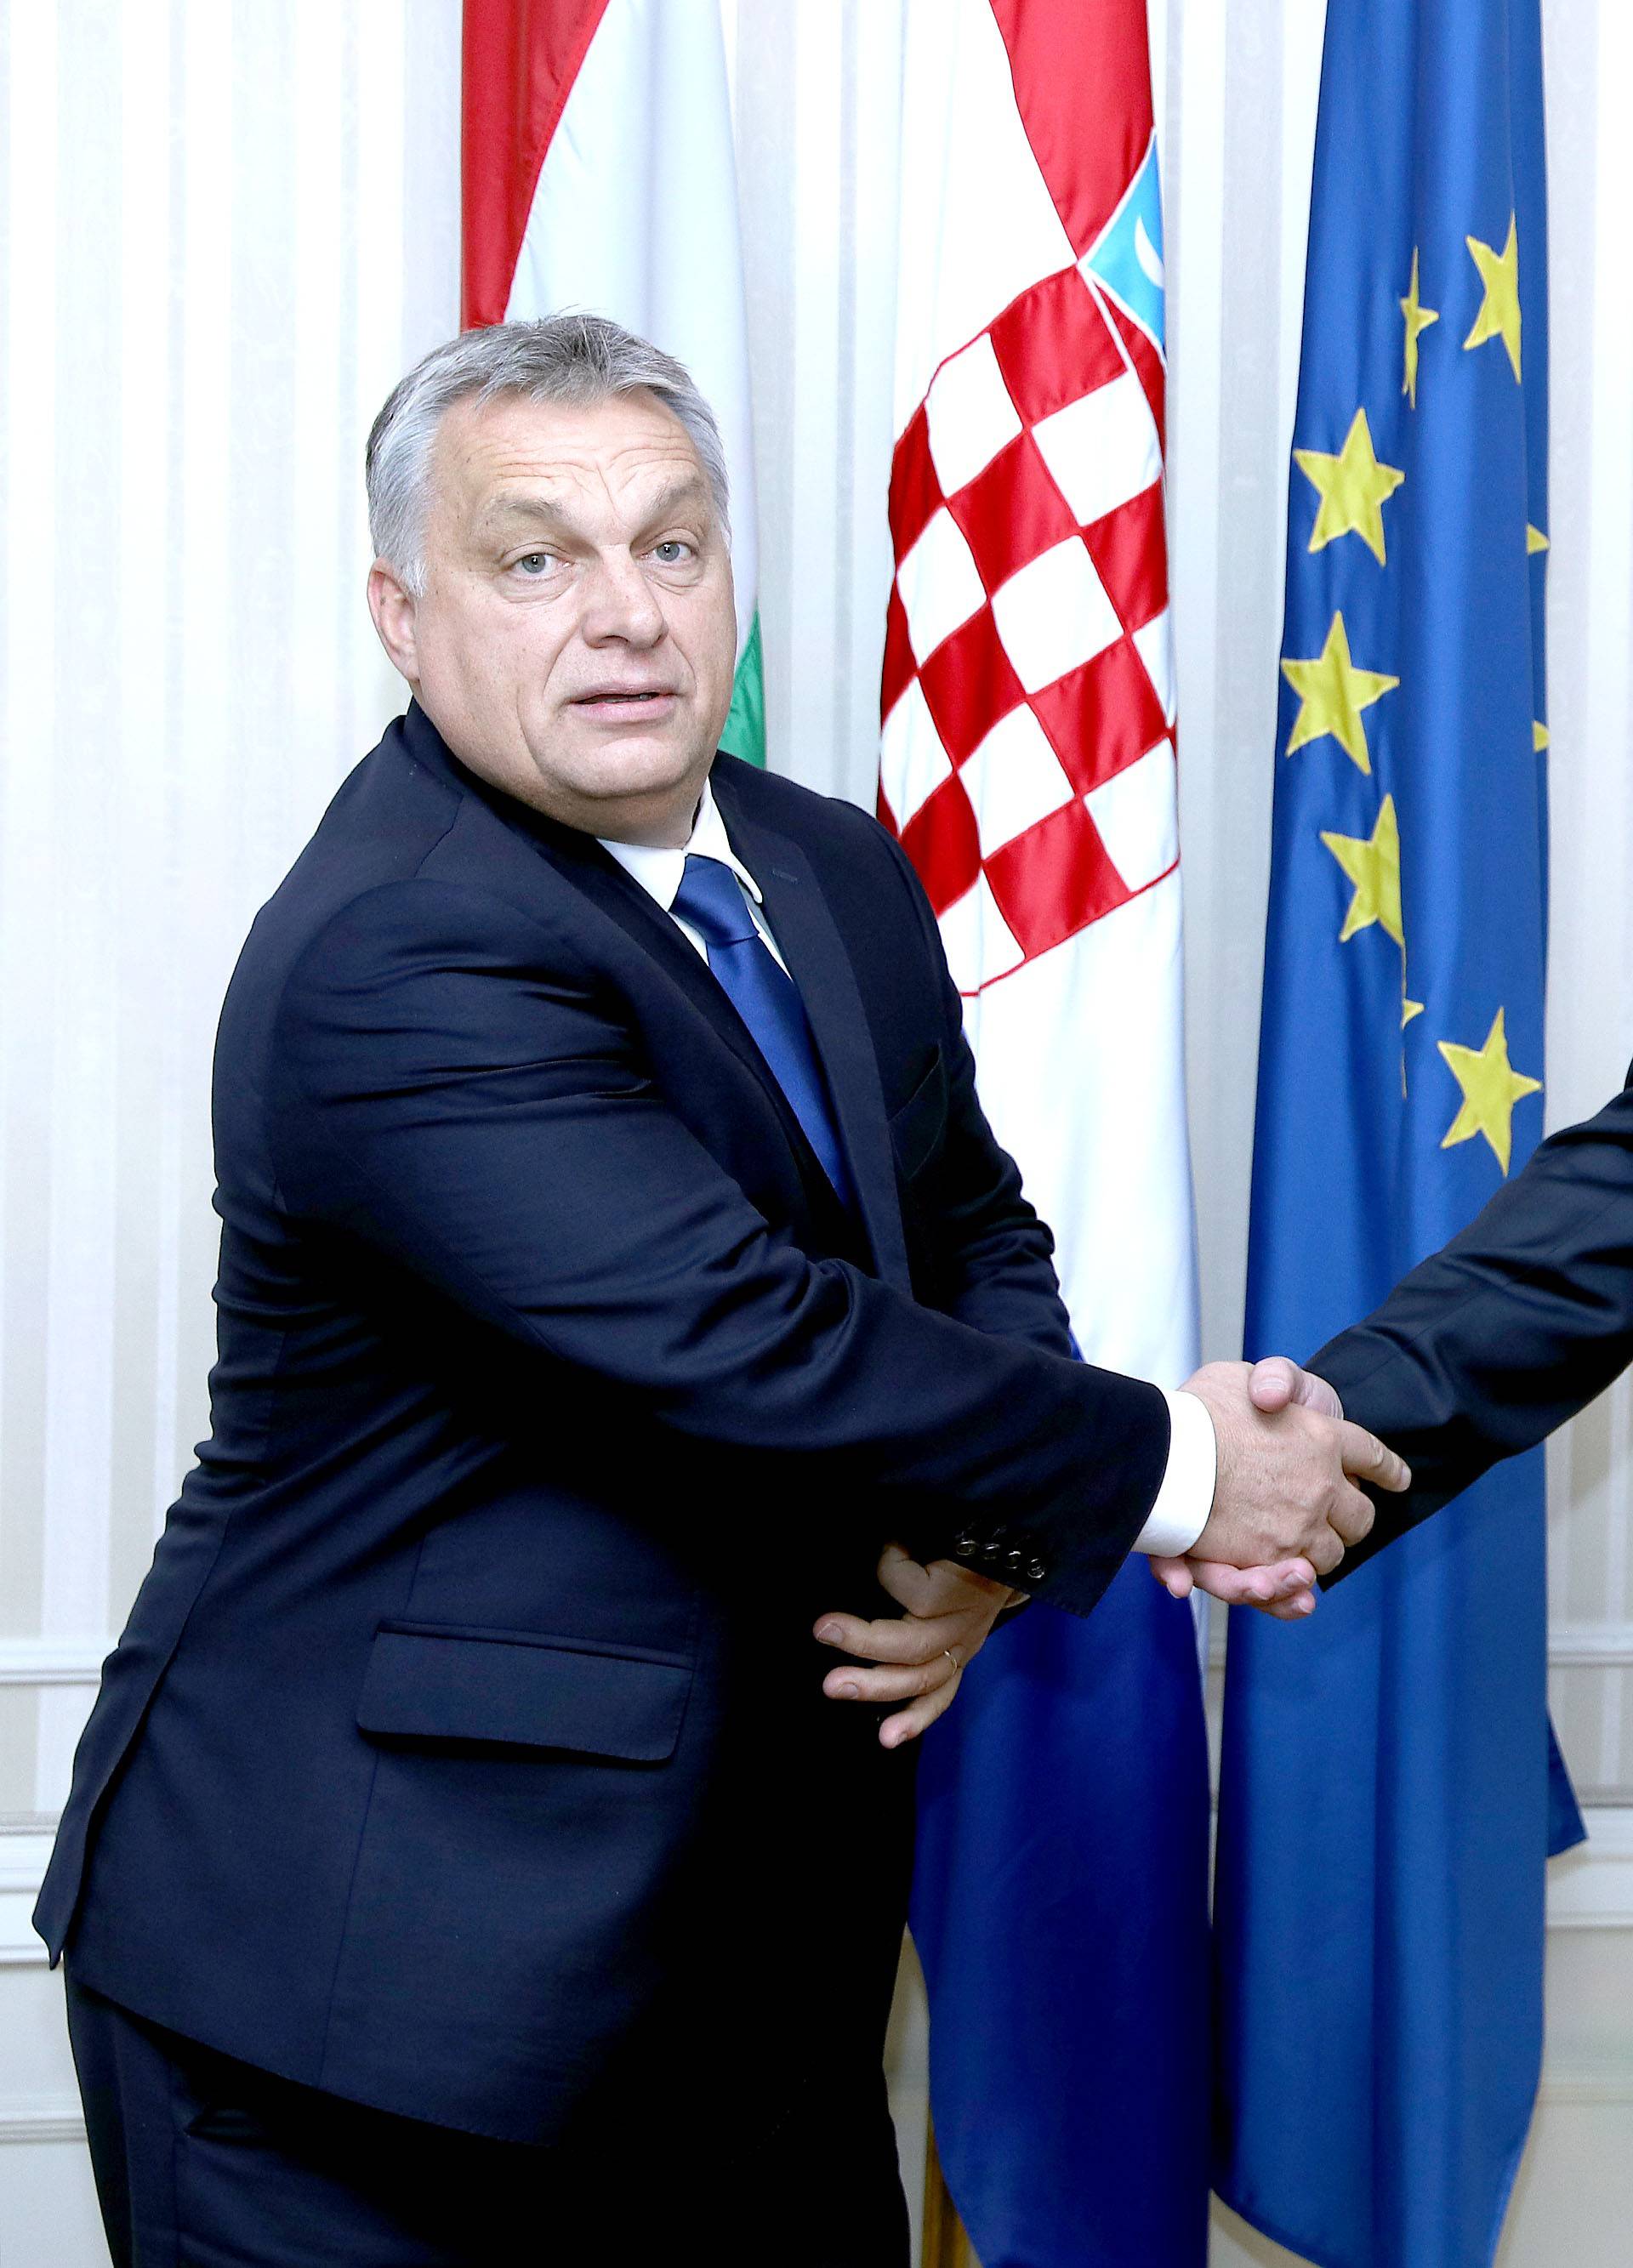 Orban je pogriješio s plakatom, šalje lošu poruku o politici EU